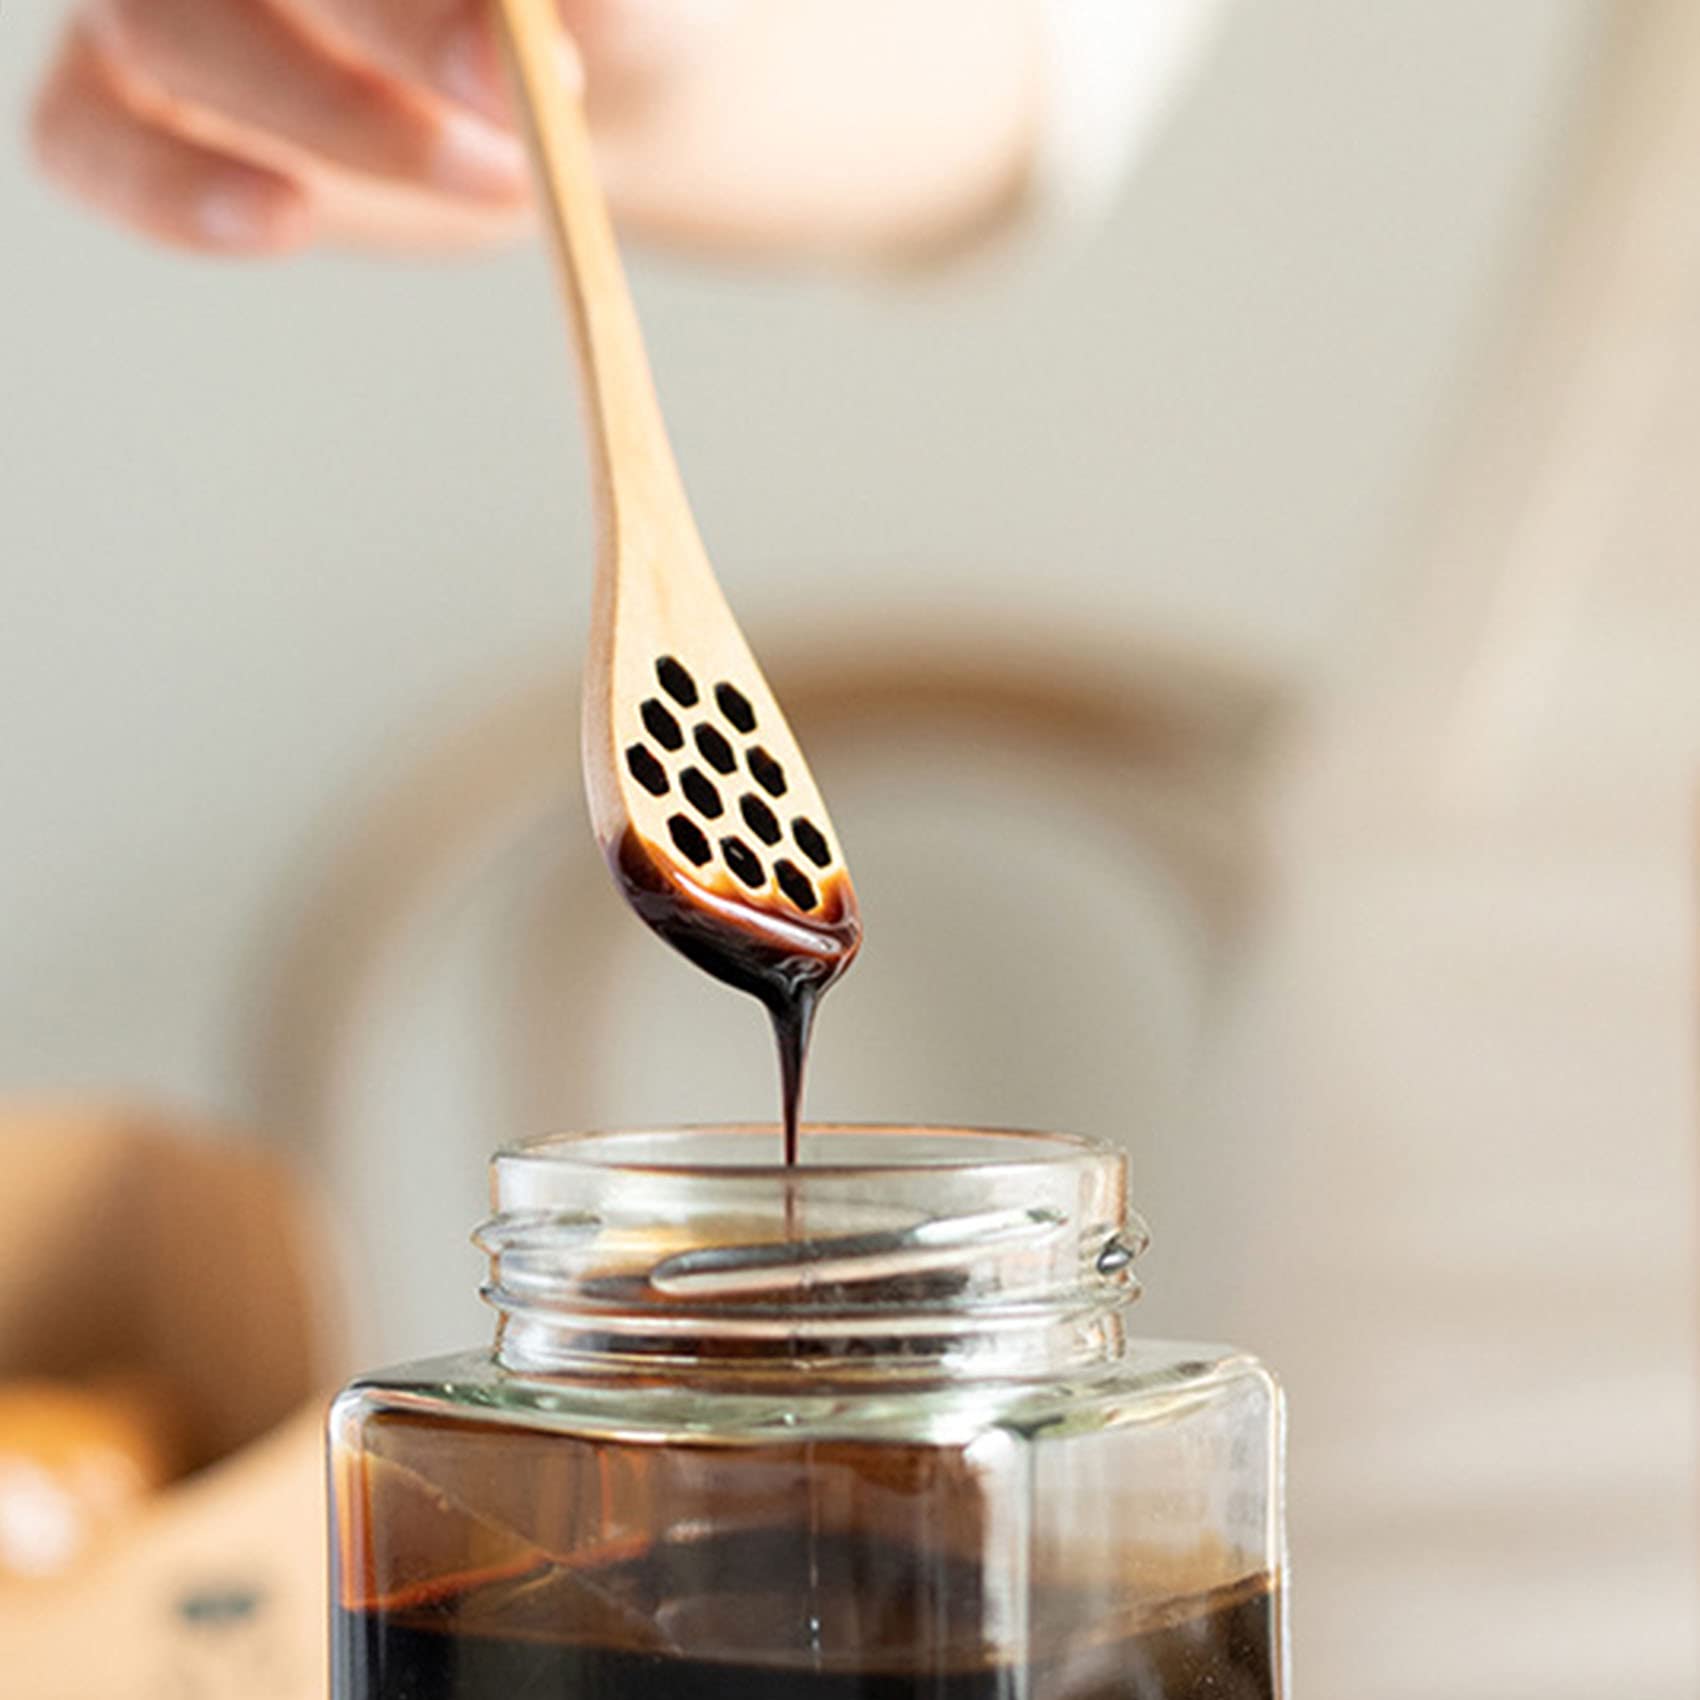 7" Wooden Honey Dipper Sticks, Honey Comb Spoons, For Handmade Honey Dispenser and Mixing Stirrer (12-Pack)